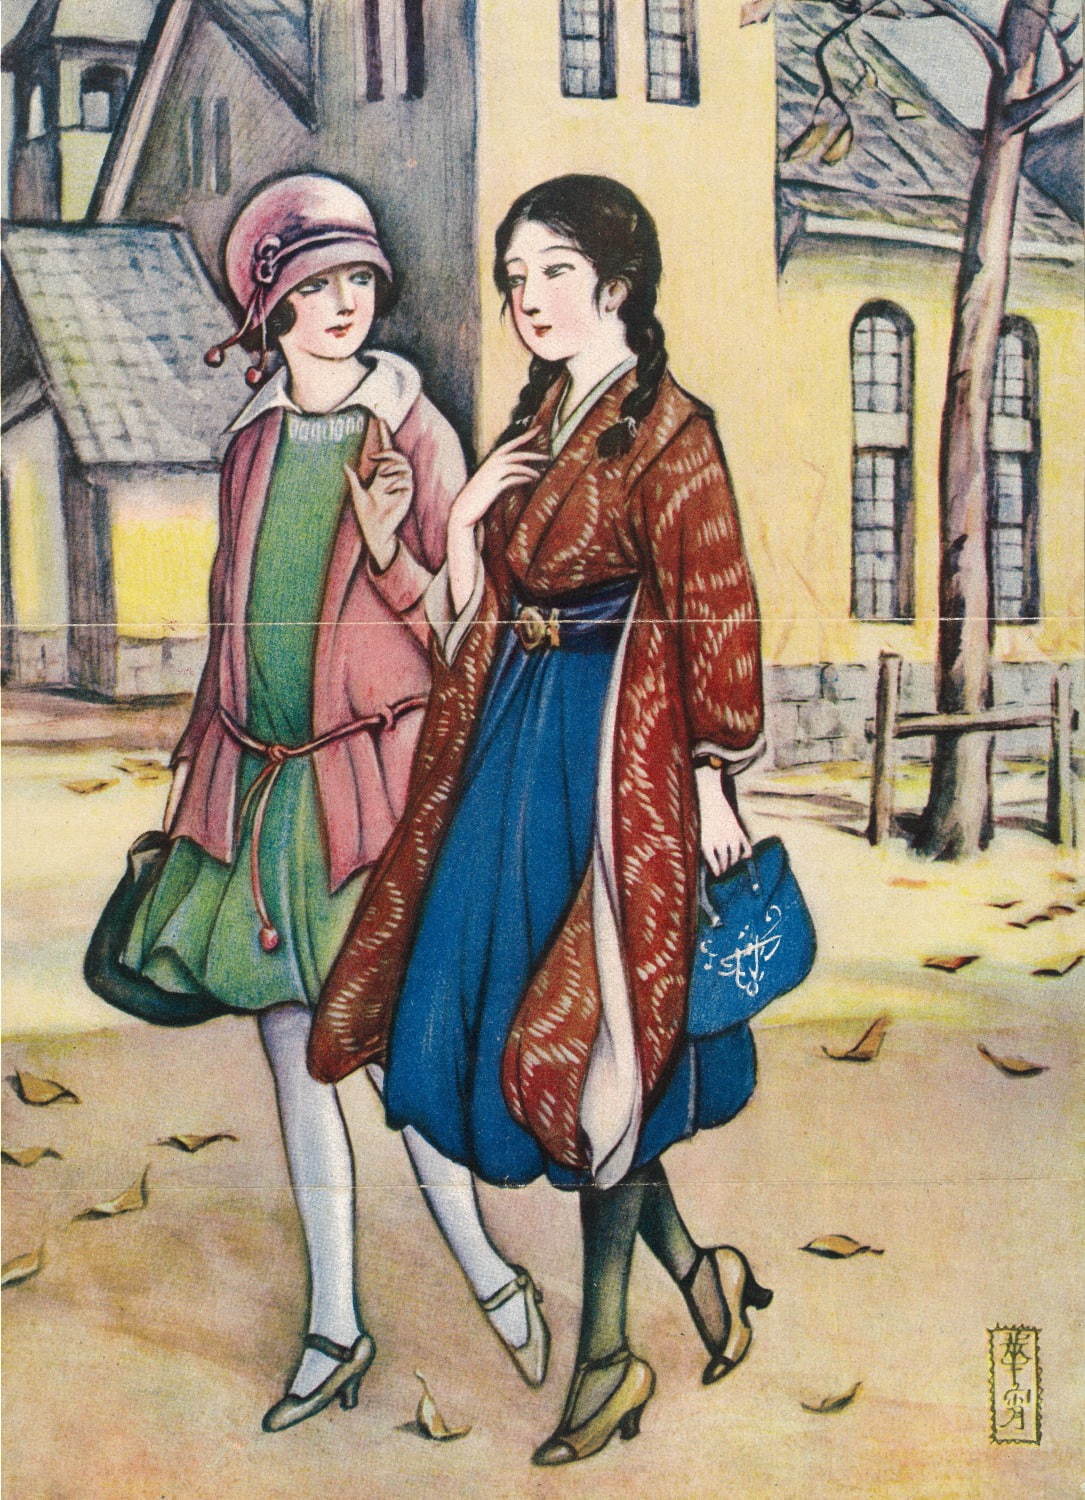 竹久夢二美術館で 女性の袴姿 の歴史をたどる展覧会 夢二の絵や袴実物など約0点 ファッションプレス